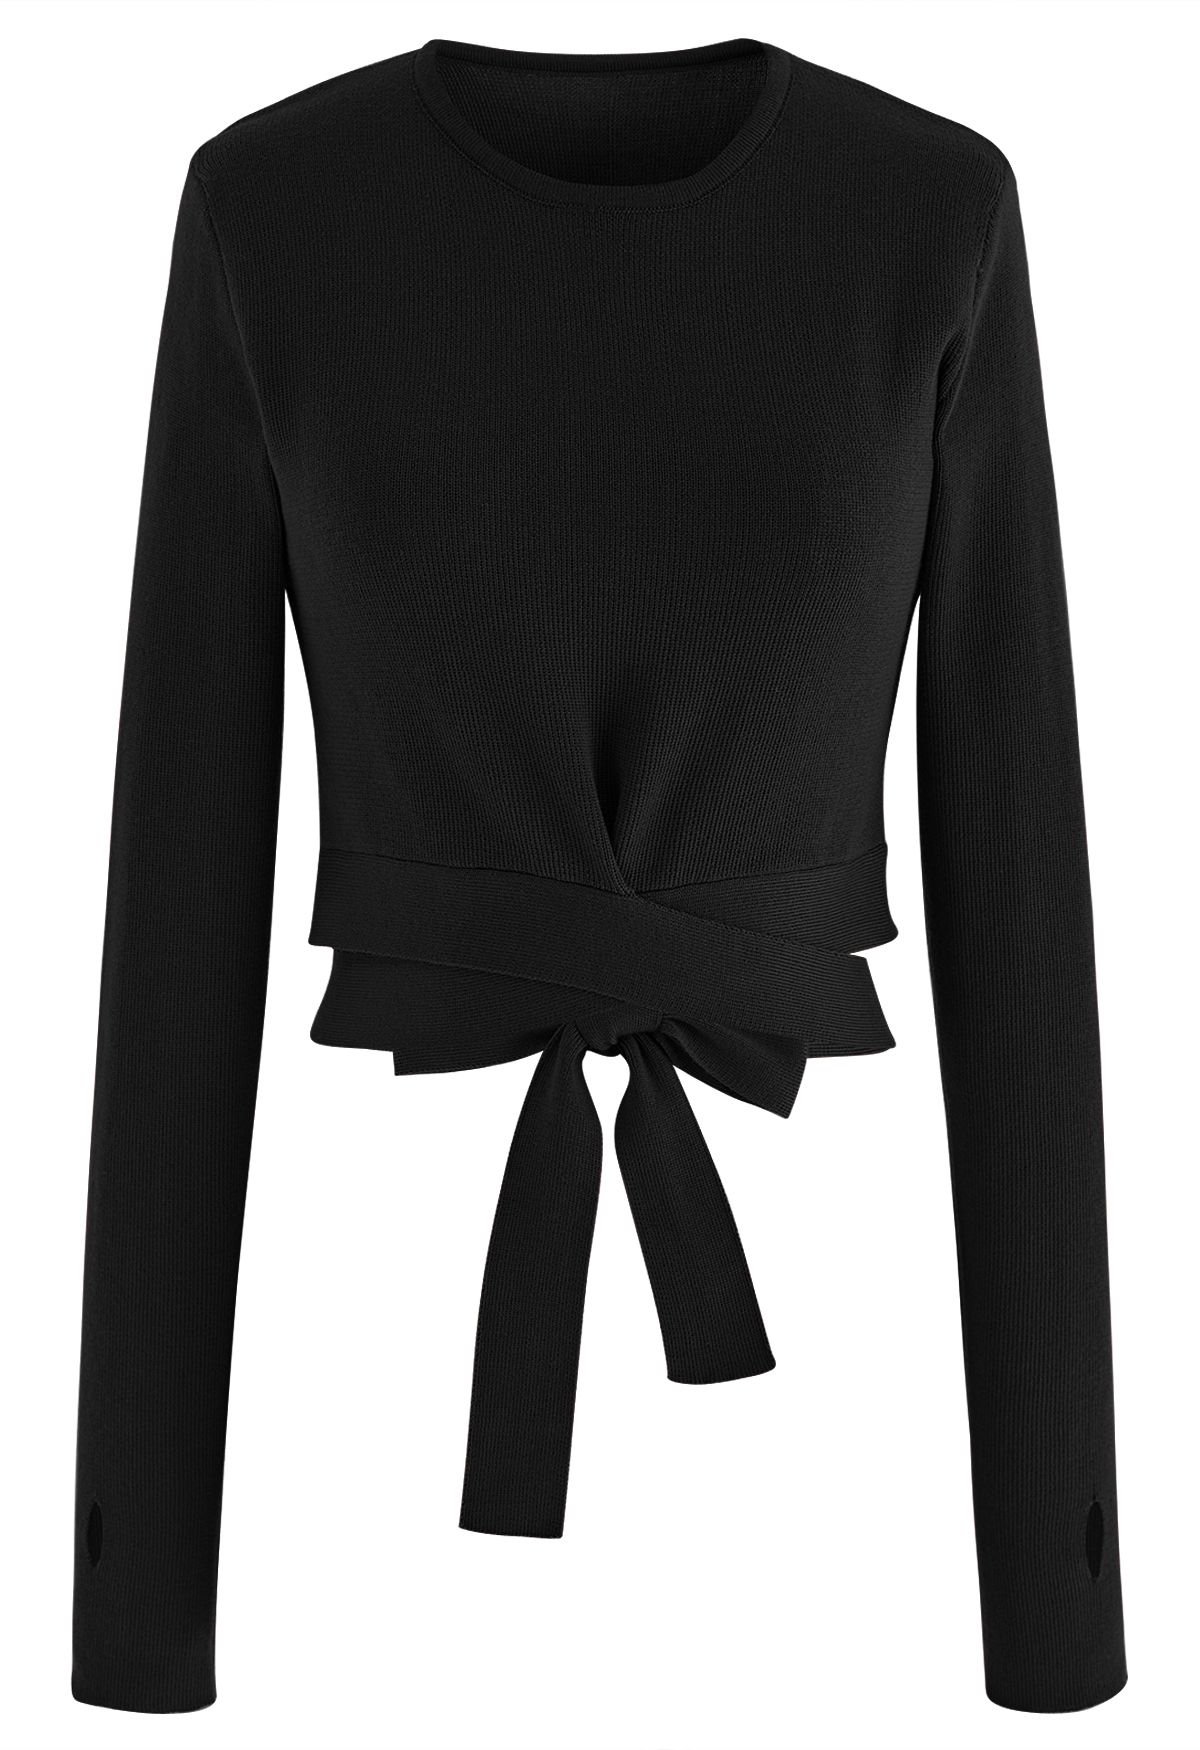 Self-Tie Bowknot Knit Crop Top in Black